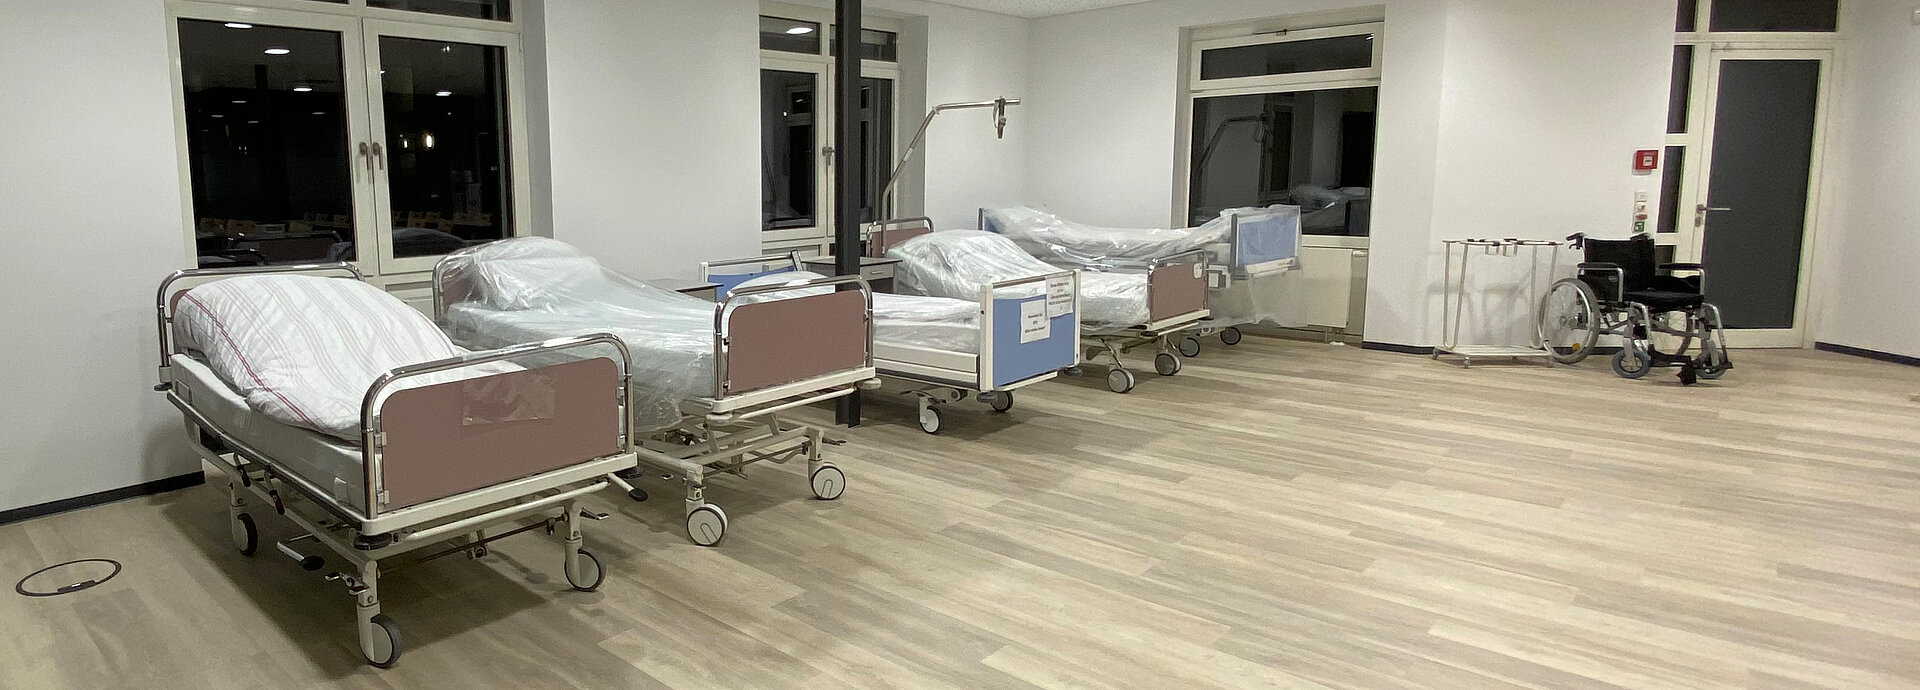 Mehrere Krankenhausbetten und ein Rollstuhl sind abgebildet: In den Demoräumen können die Auszubildenden praktische Fertigkeiten in der Pflege, Pflegetechniken und Aufgaben wie Injektionen, Infusionen oder Lagerungen üben.